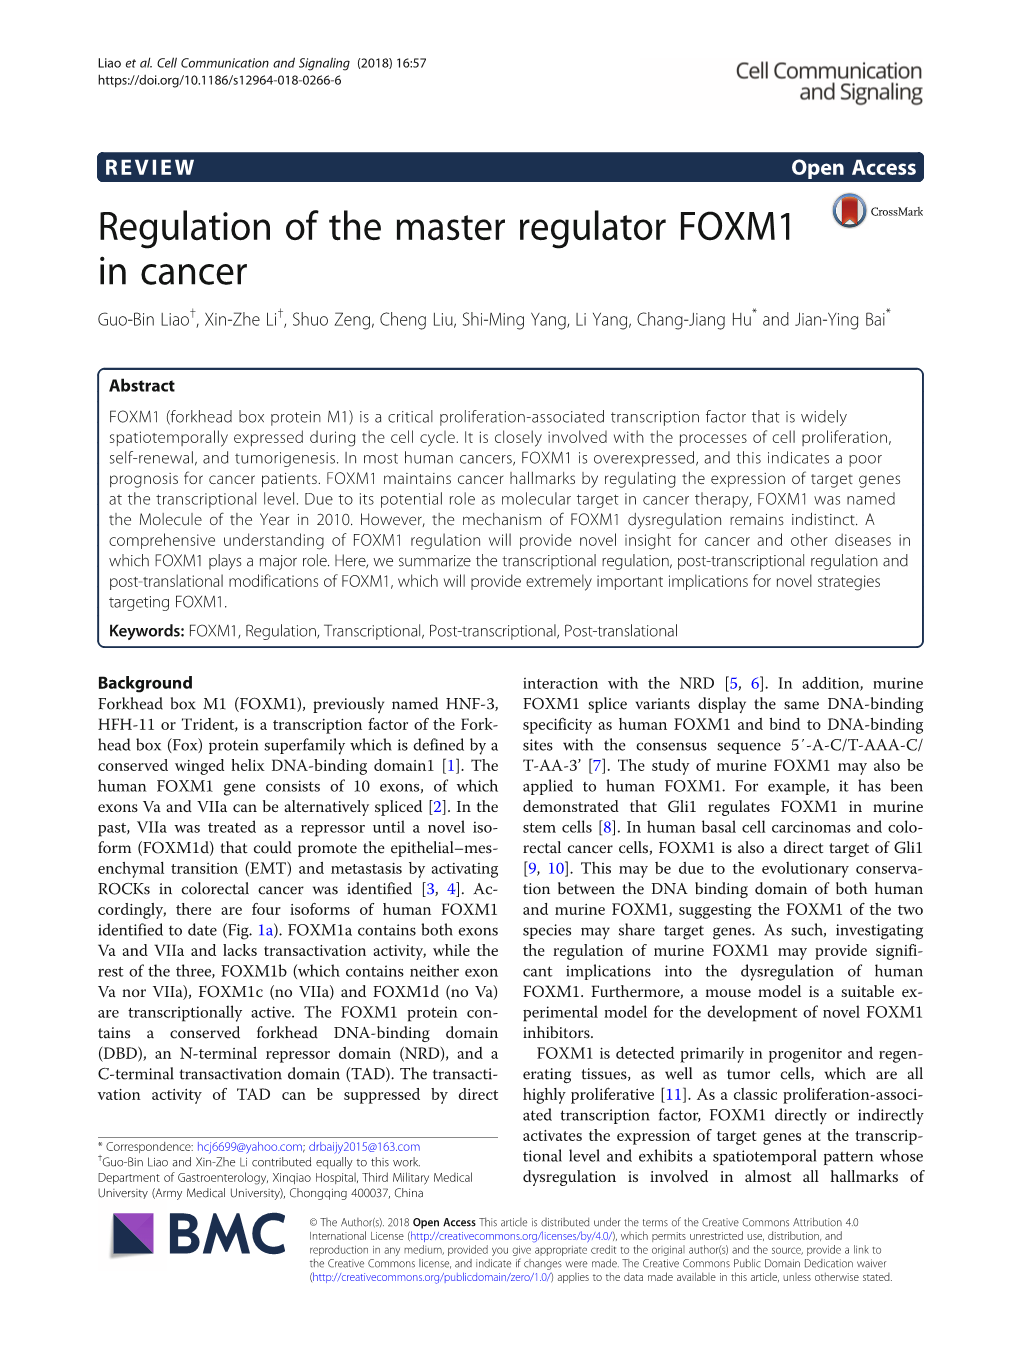 Regulation of the Master Regulator FOXM1 in Cancer Guo-Bin Liao†, Xin-Zhe Li†, Shuo Zeng, Cheng Liu, Shi-Ming Yang, Li Yang, Chang-Jiang Hu* and Jian-Ying Bai*